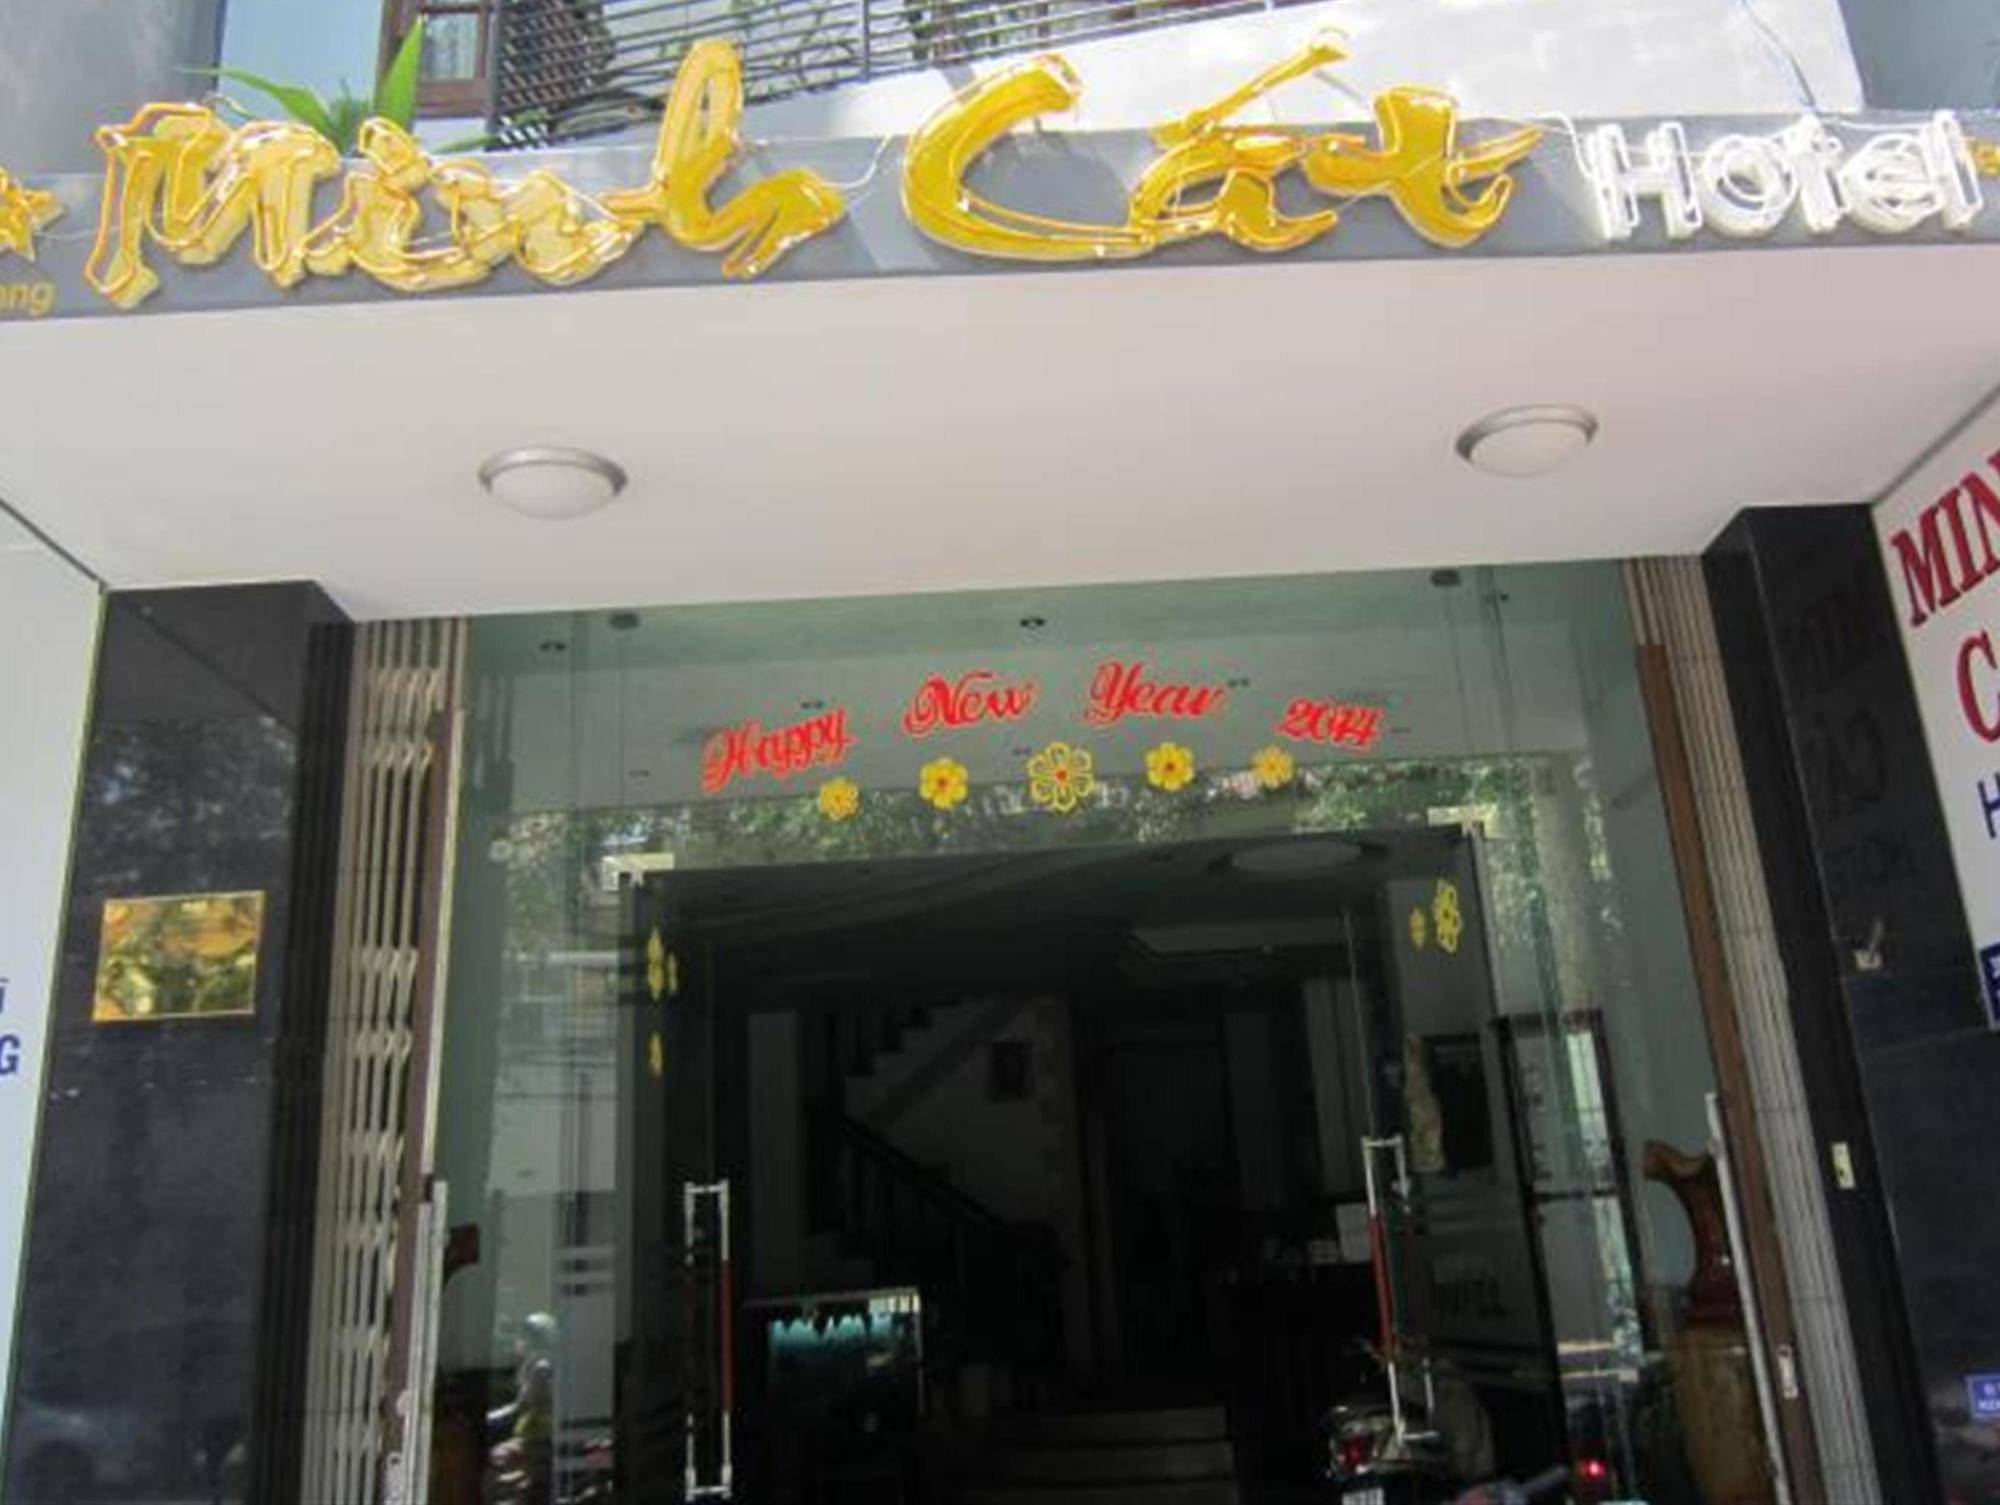 Minh Cat Hotel ญาจาง ภายนอก รูปภาพ